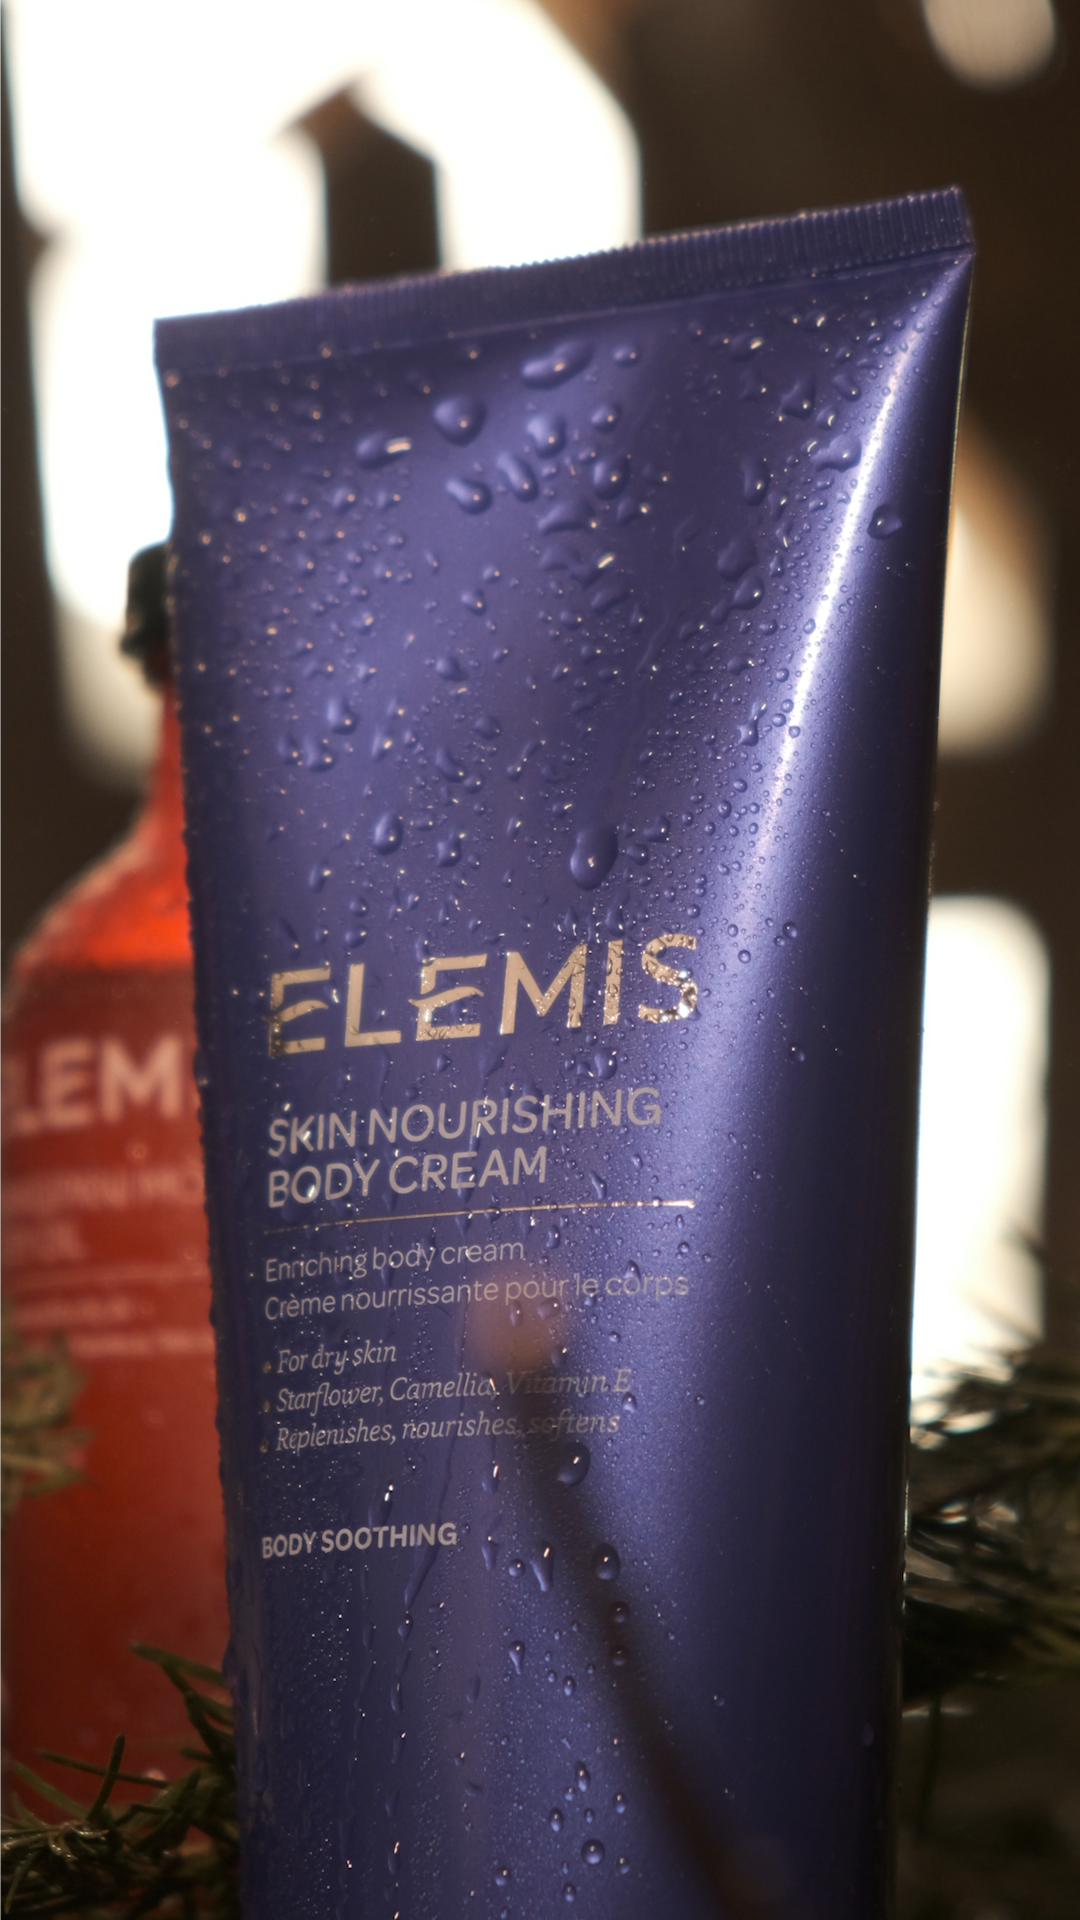 Комплекс Siberia и бренд Elemis запускают авторскую программу женского банного спа (фото 7)